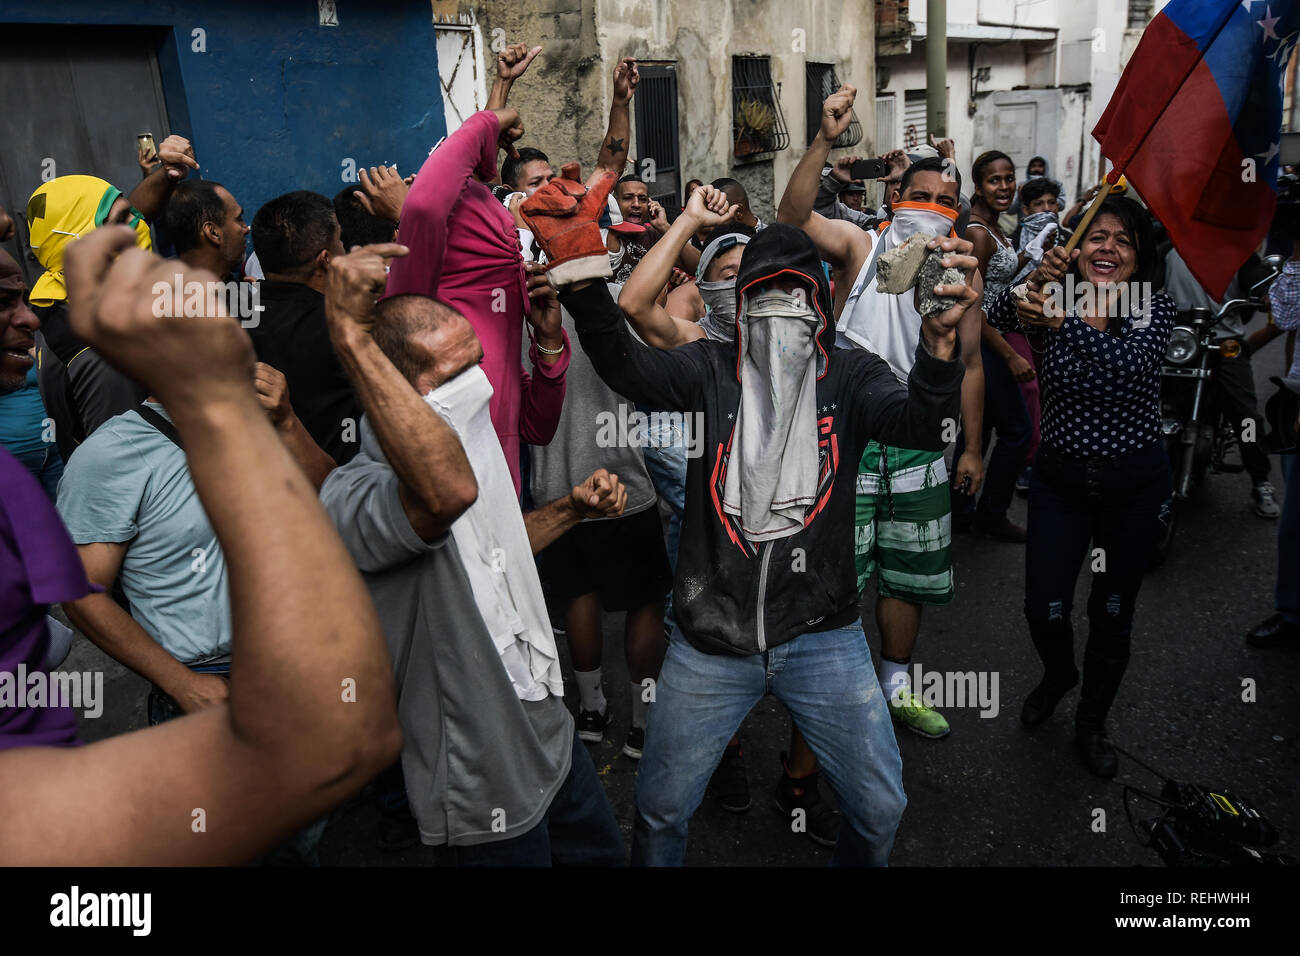 Die protestierenden riefen Slogans während eines Protestes gegen Nicolas Maduro. 27 Offizieren der Nationalgarde wurden nach Aufständischen in den Befehl des Cotiza im Januar 21 in der Stadt Caracas verhaftet. Die politische und wirtschaftliche Krise in Venezuela von internationalen und lokalen Belastungen aufgrund der illegitimität von Nicolas Maduro in der verschärft. Stockfoto